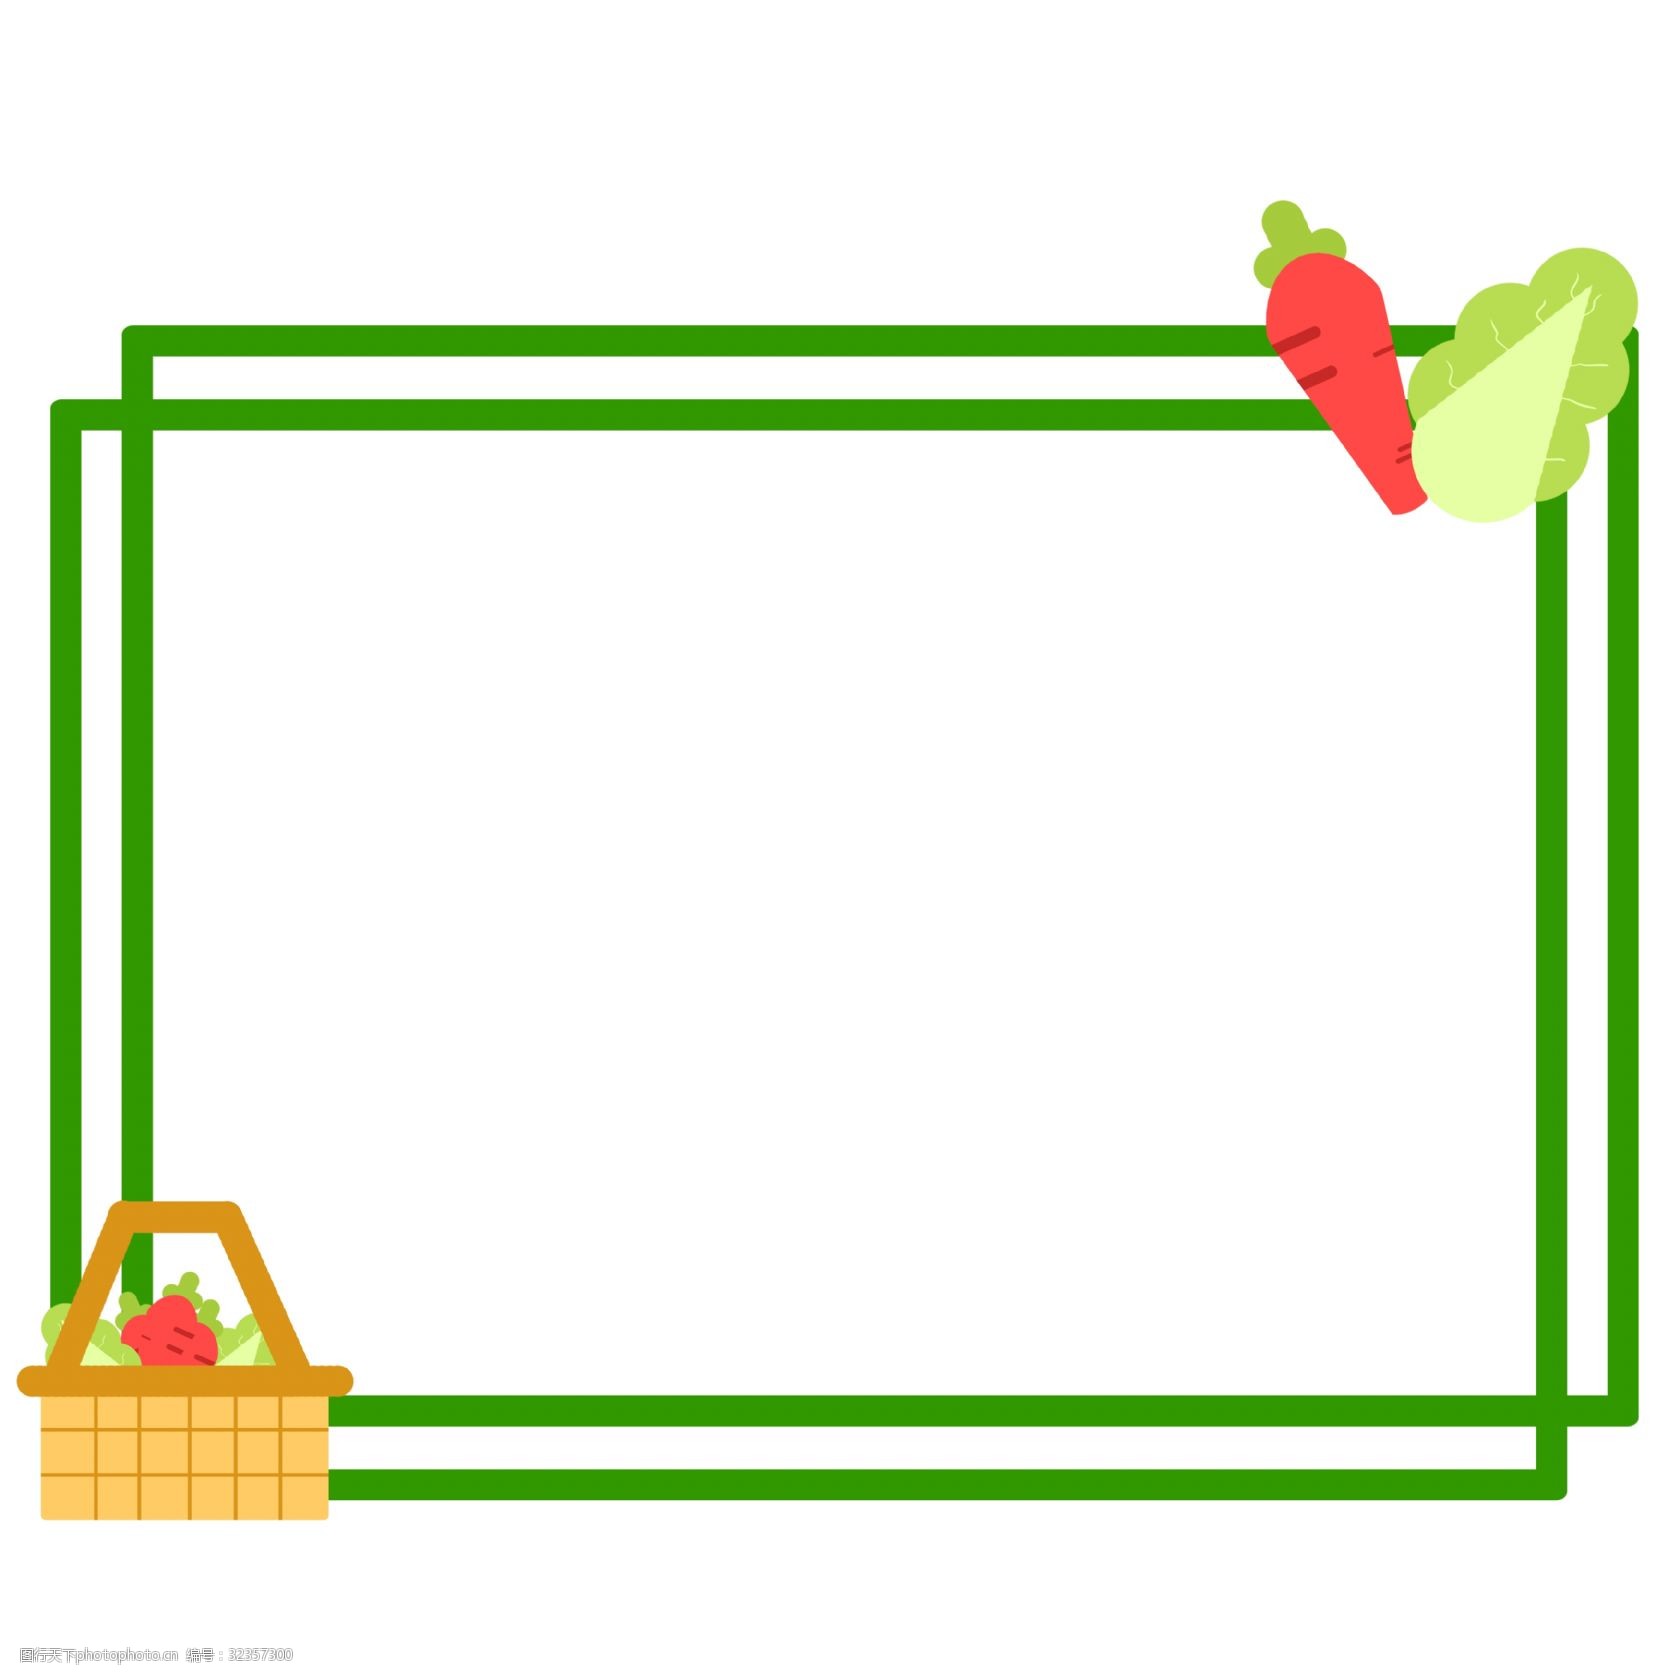 关键词:手绘蔬菜边框插画 绿色的边框 新鲜的蔬菜 卡通插画 手绘边框